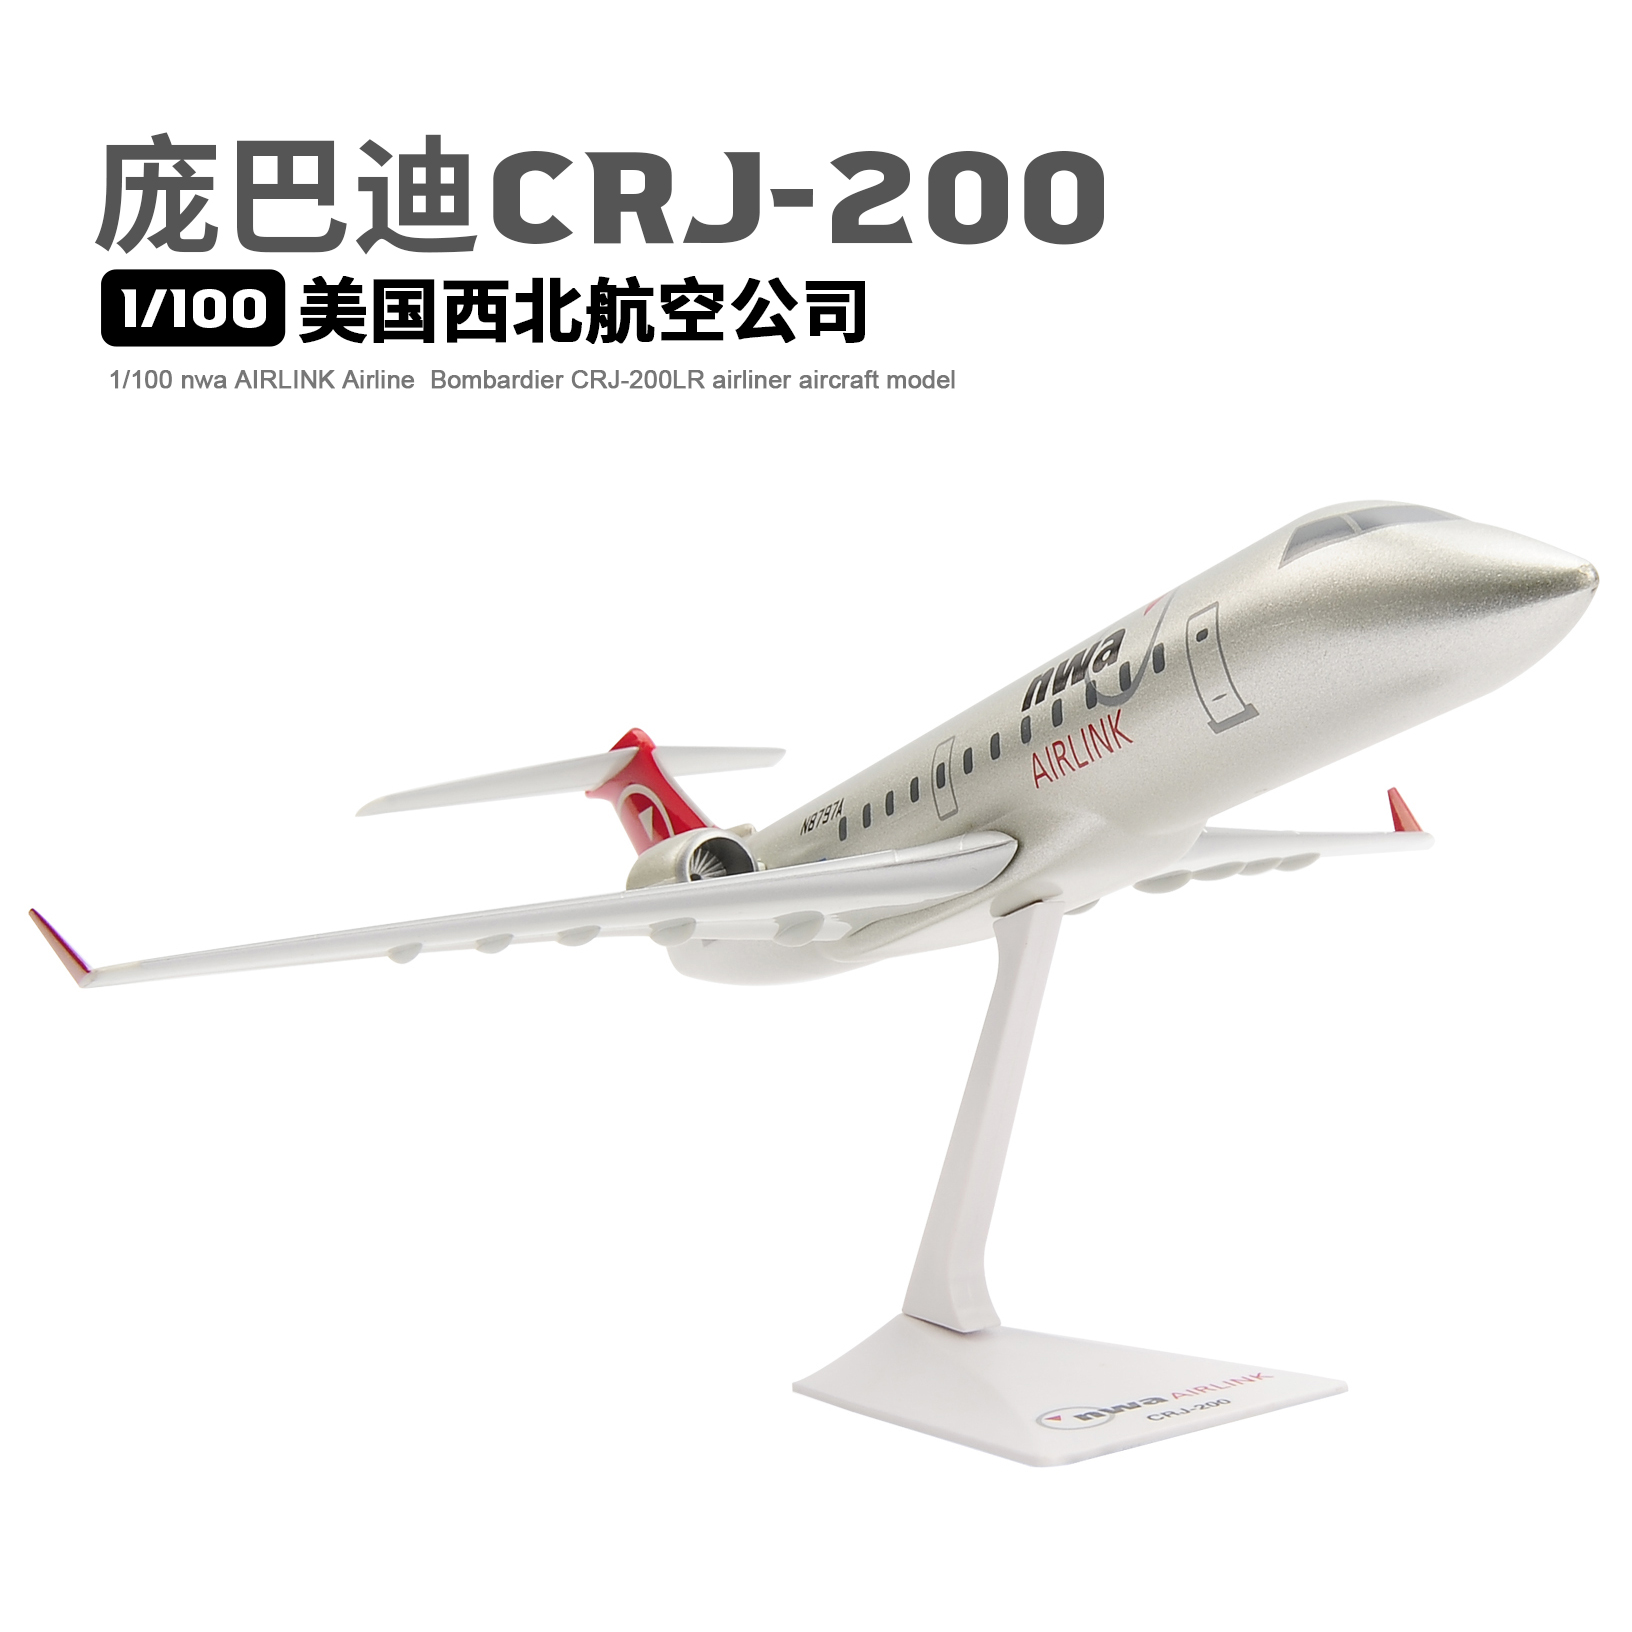 1/100 美国西北航空公司 Bombardier CRJ-200 拼装飞机航空模型